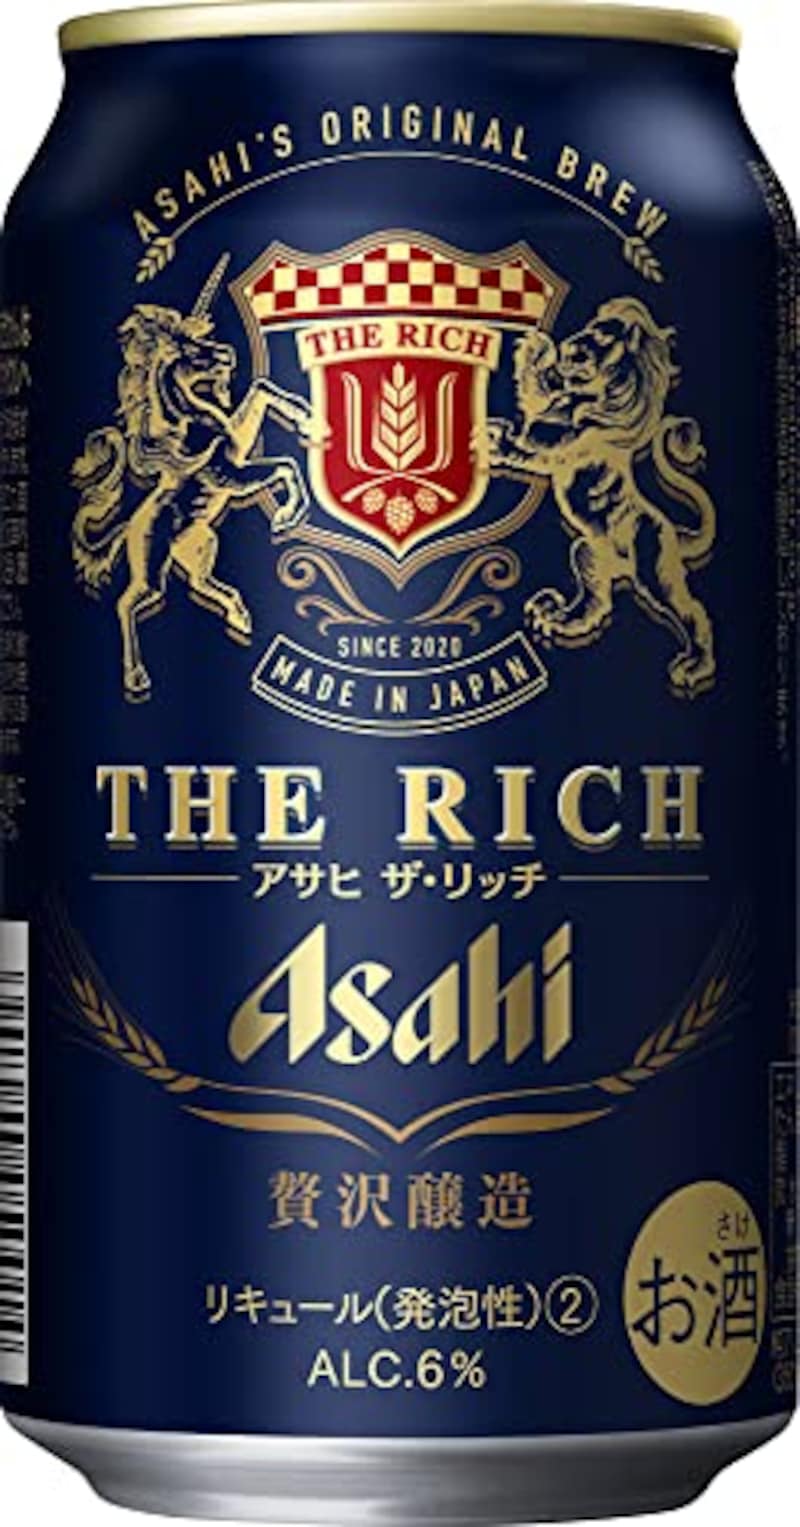 アサヒビール,ザ・リッチ 贅沢醸造